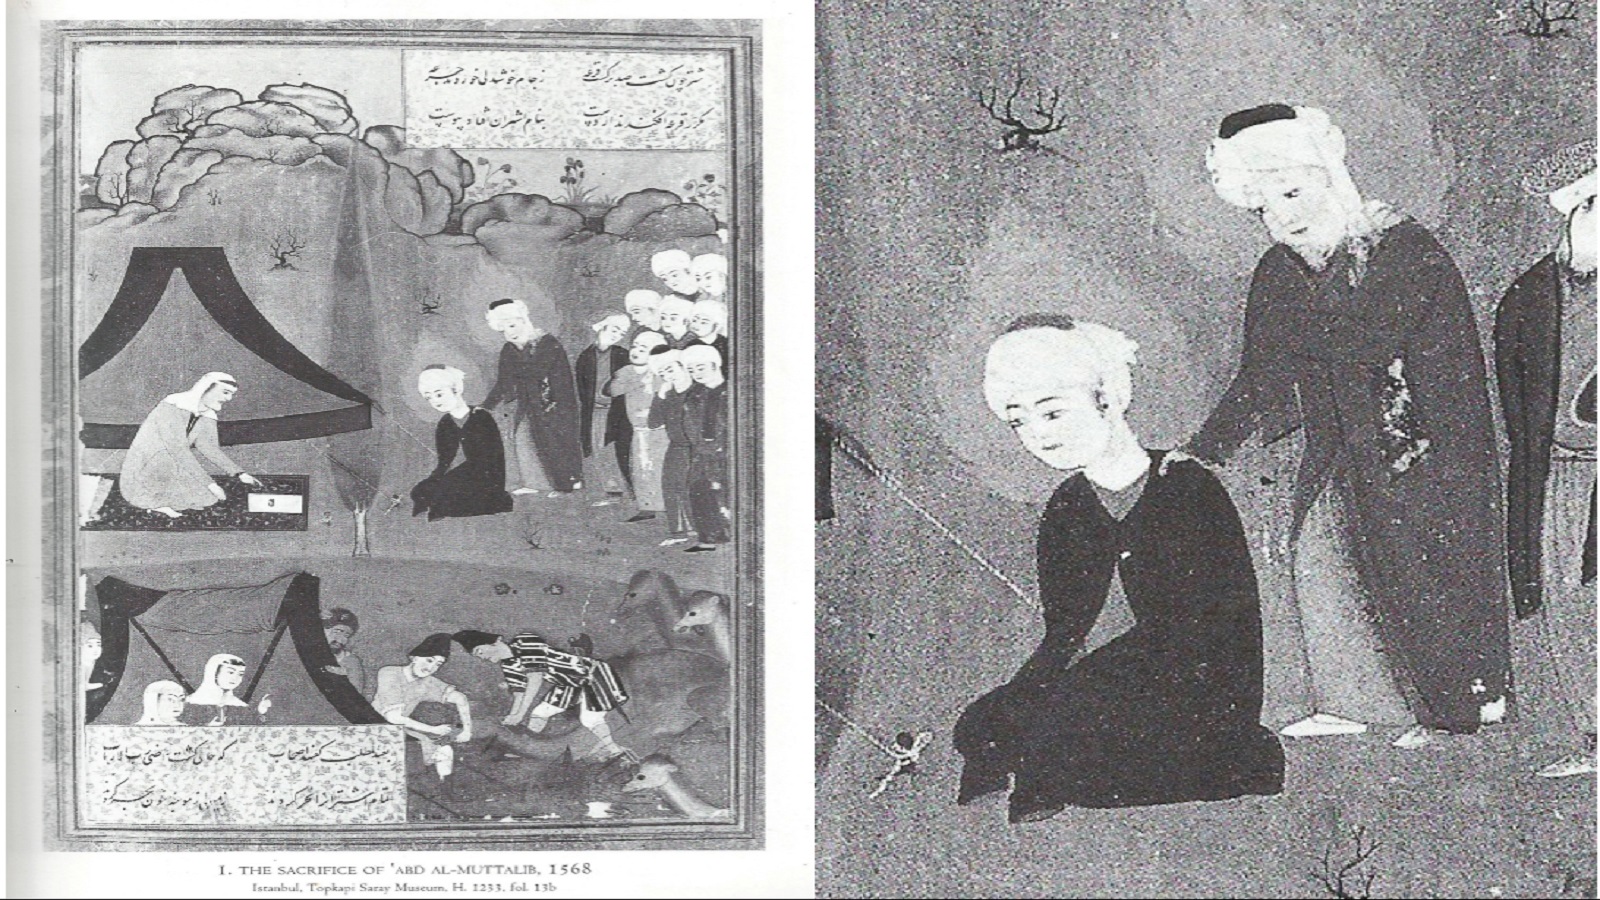  تضحية عبد المطلب، مثنوي نظام الدين الاسترآبادي، 1568، سراي توبكابي